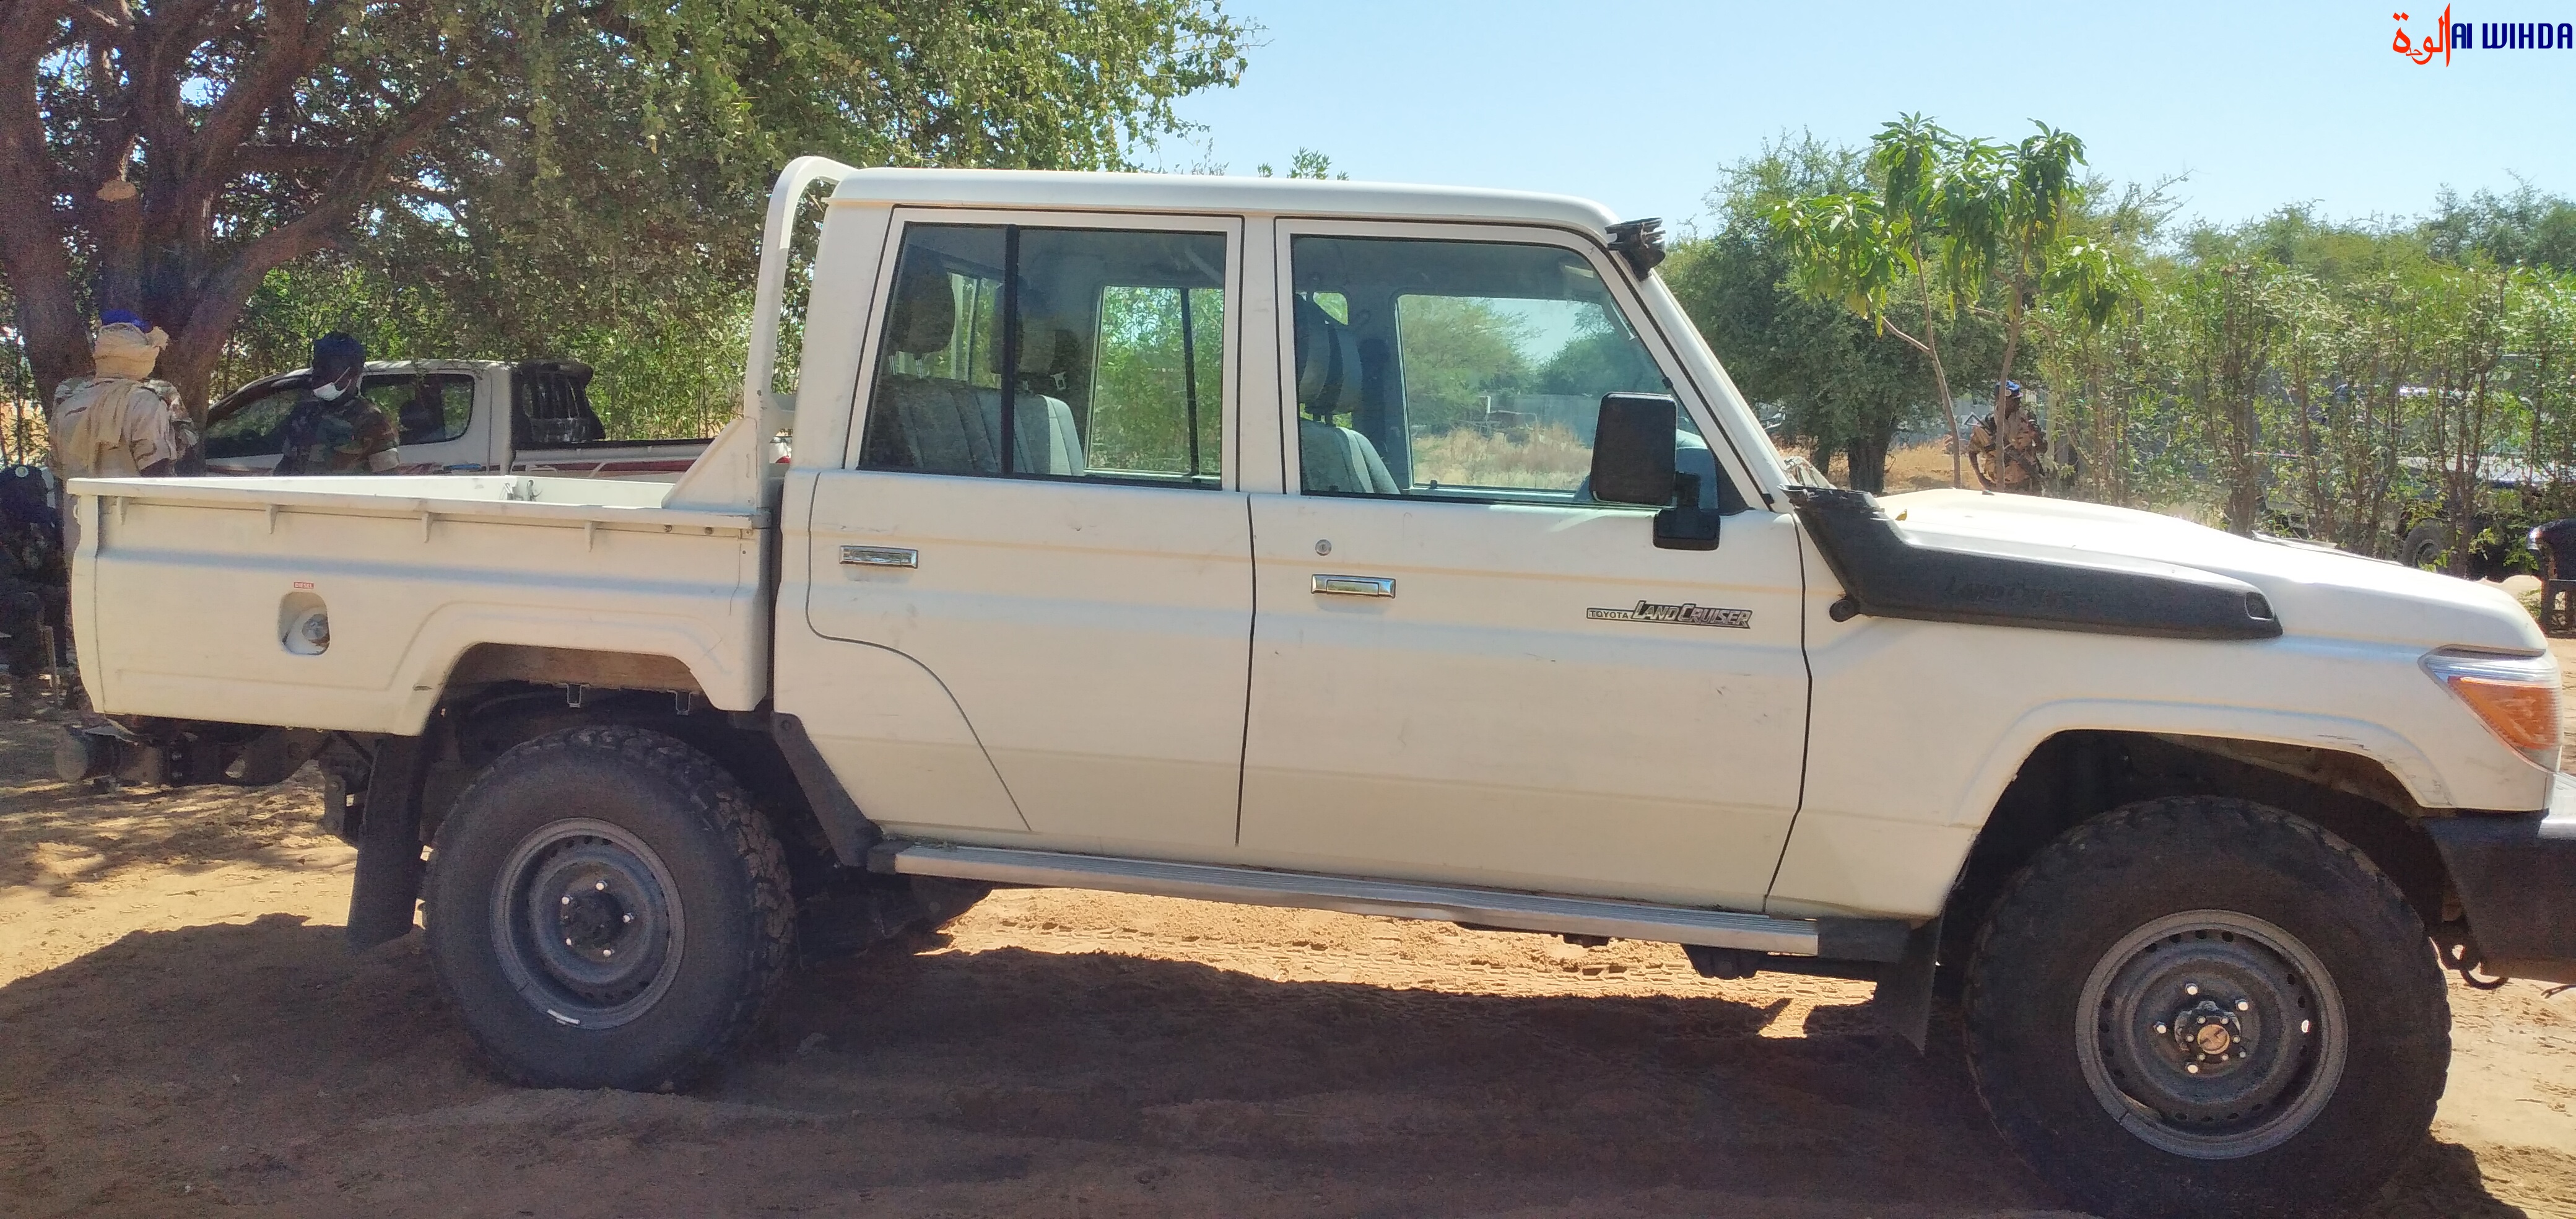 Tchad : braquage d'un véhicule du ministère de la Justice, la gendarmerie l'a retrouvé